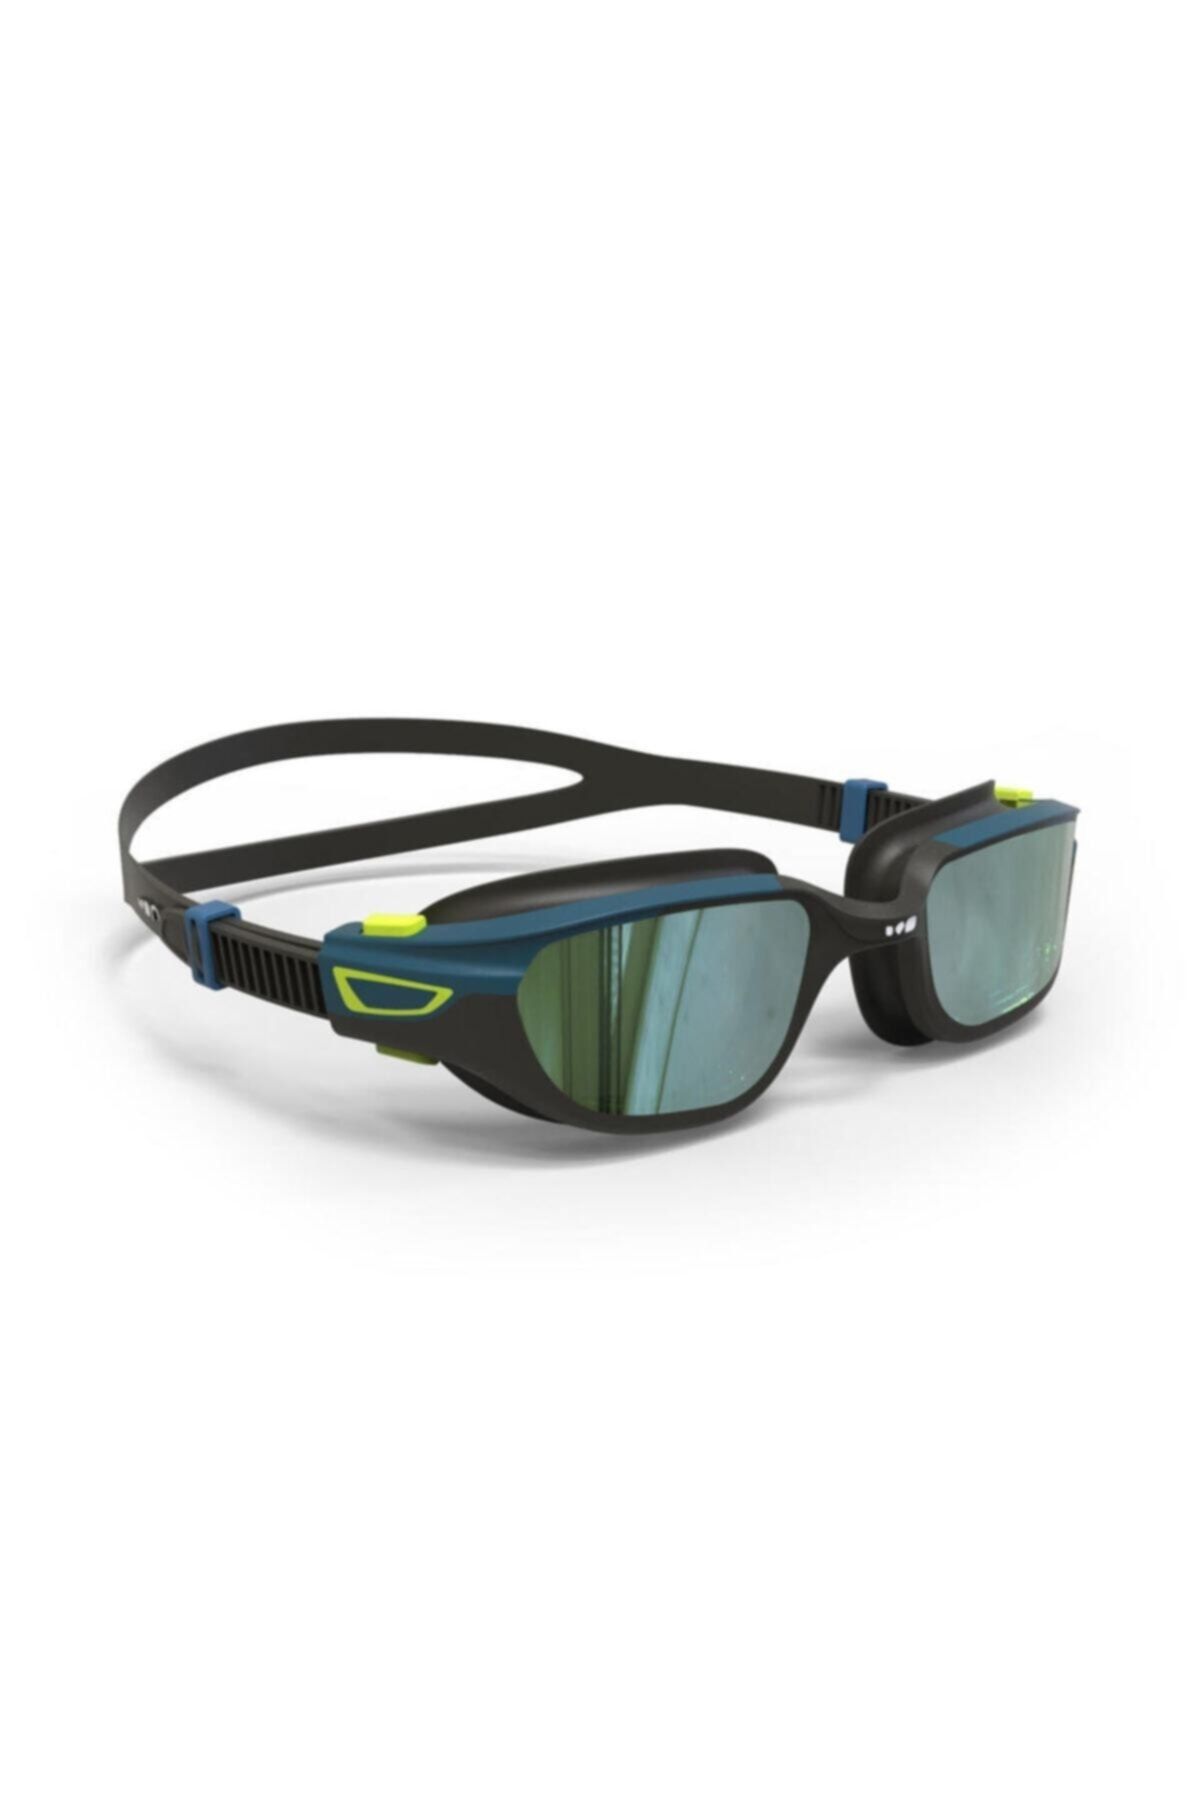 Decathlon Yüzücü Gözlüğü - Siyah / Mavi - Aynalı Camlar - L Boy - Spırıt